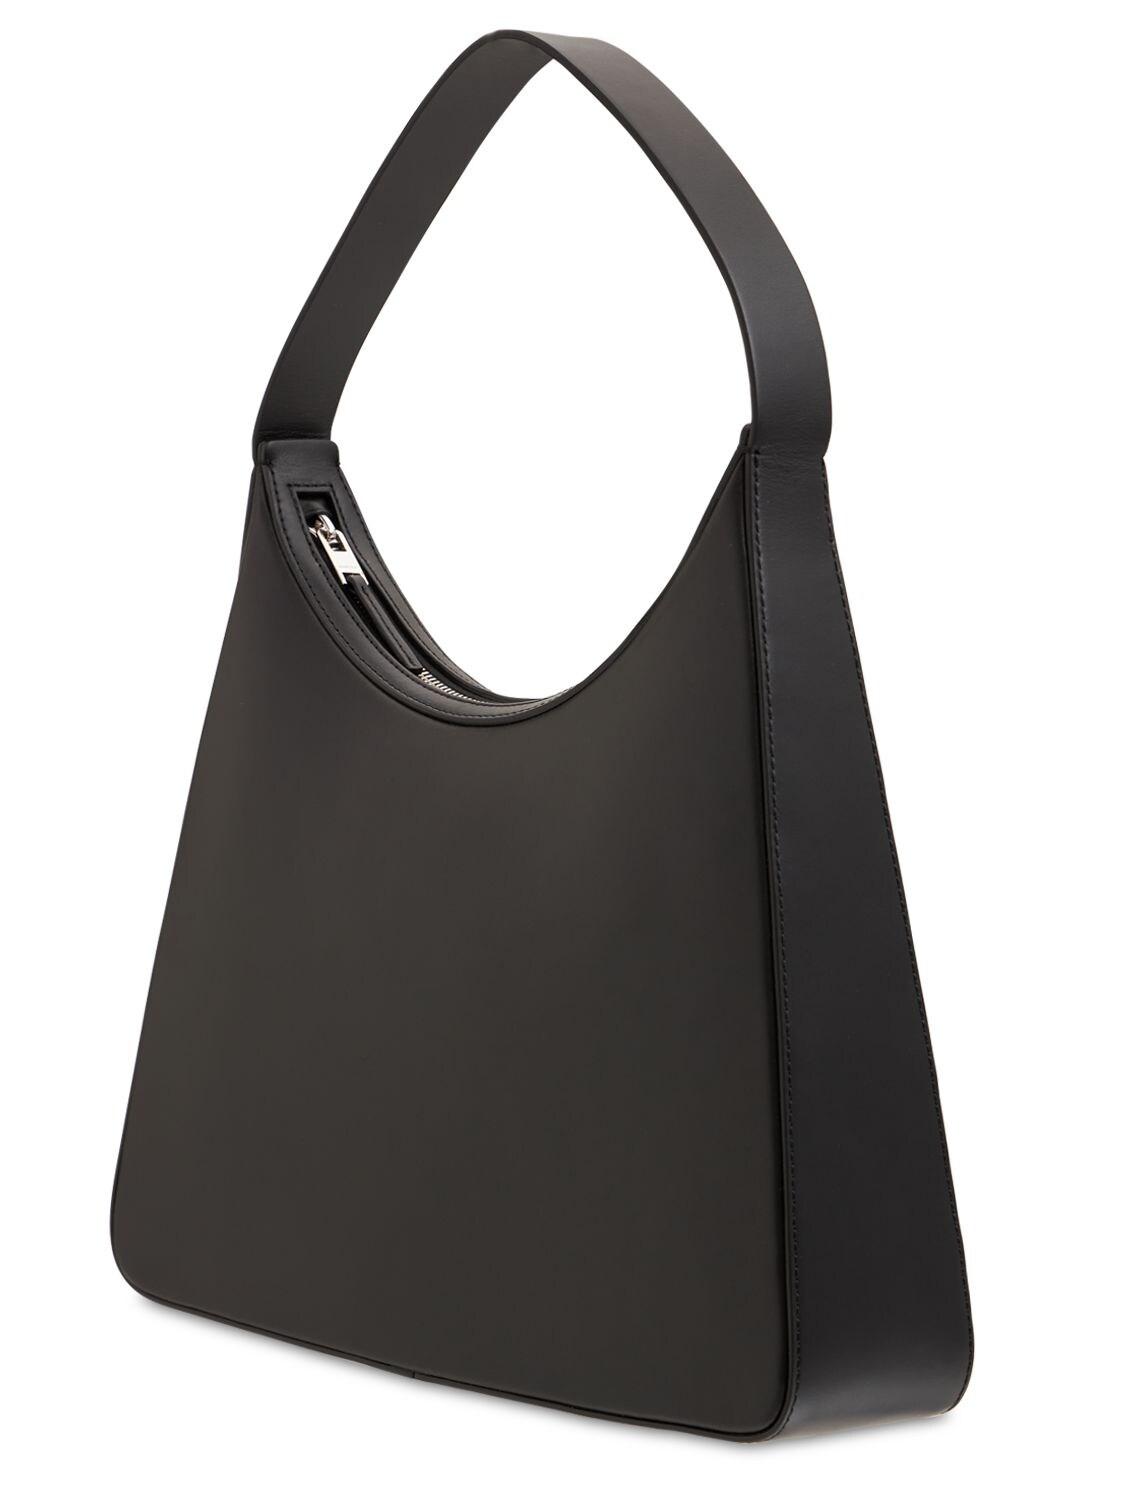 Ambush Hobo Leather Shoulder Bag in Black/Silver (Black) | Lyst